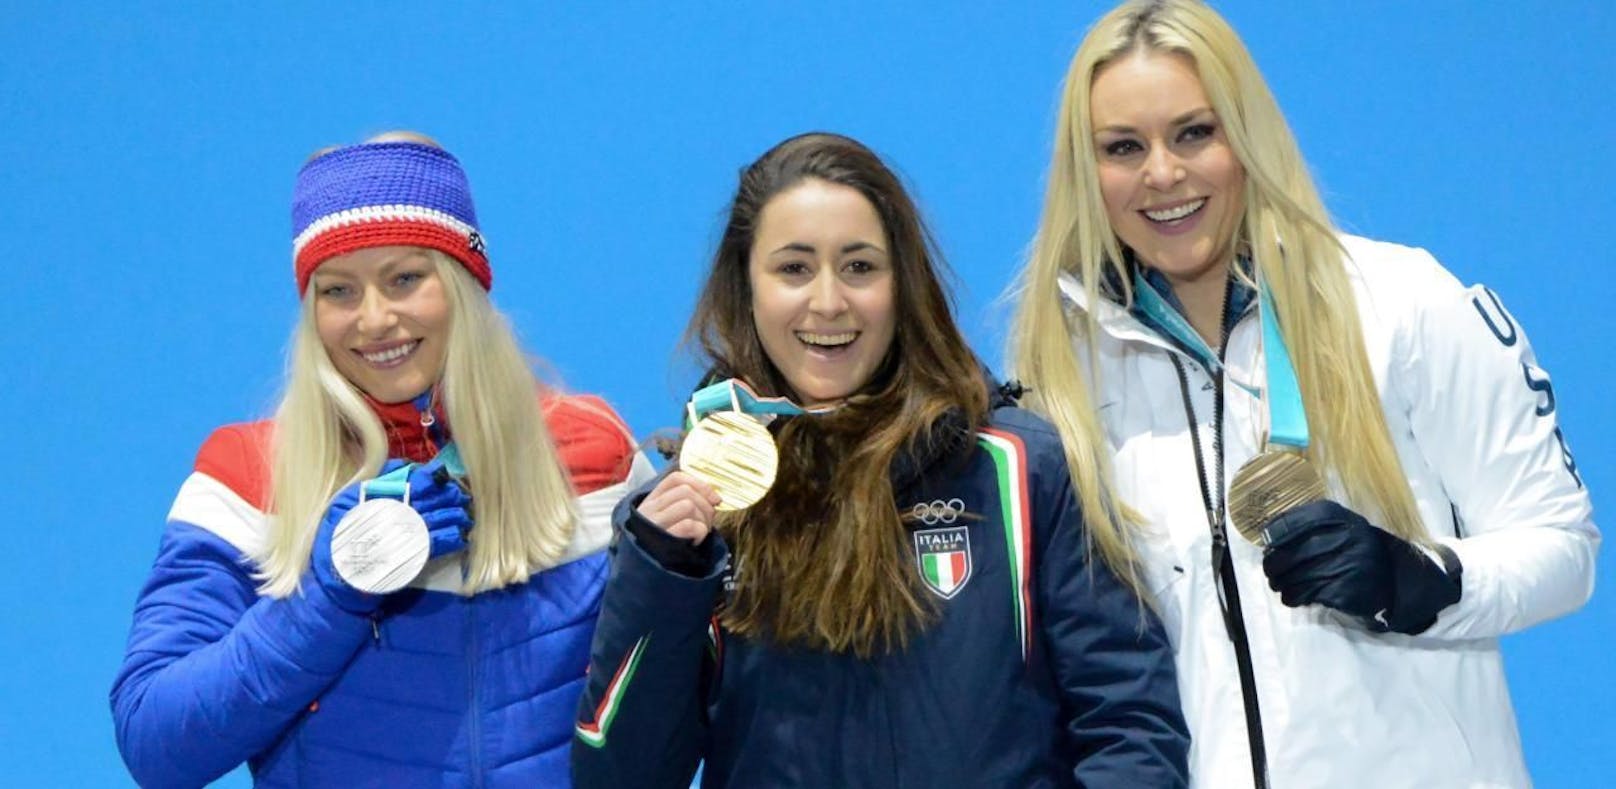 Sofia Goggia raste 2018 zu Olympiagold in der Abfahrt. Mit ihr am Bild die beiden Silbernen: Ragnhild Mowinckel und Lindsey Vonn.